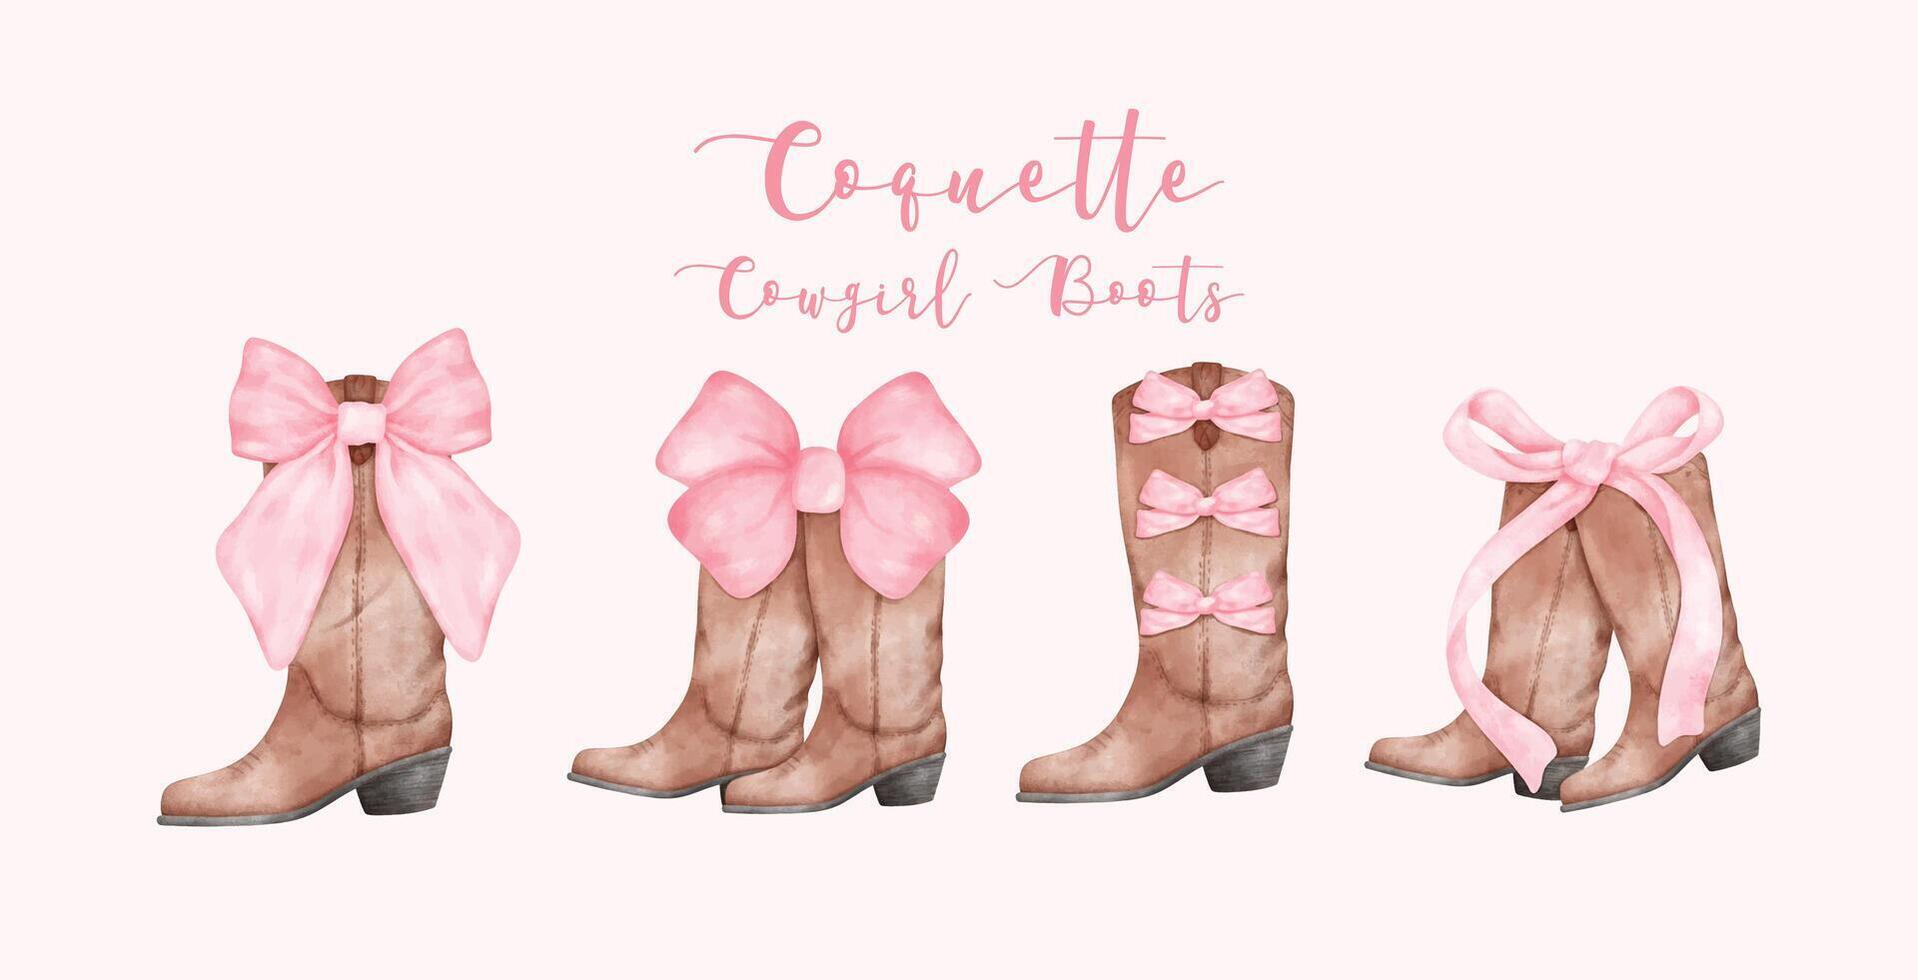 coquette veedrijfster laarzen met roze lint boog waterverf set. retro esthetisch hand- geschilderd illustratie banier vector